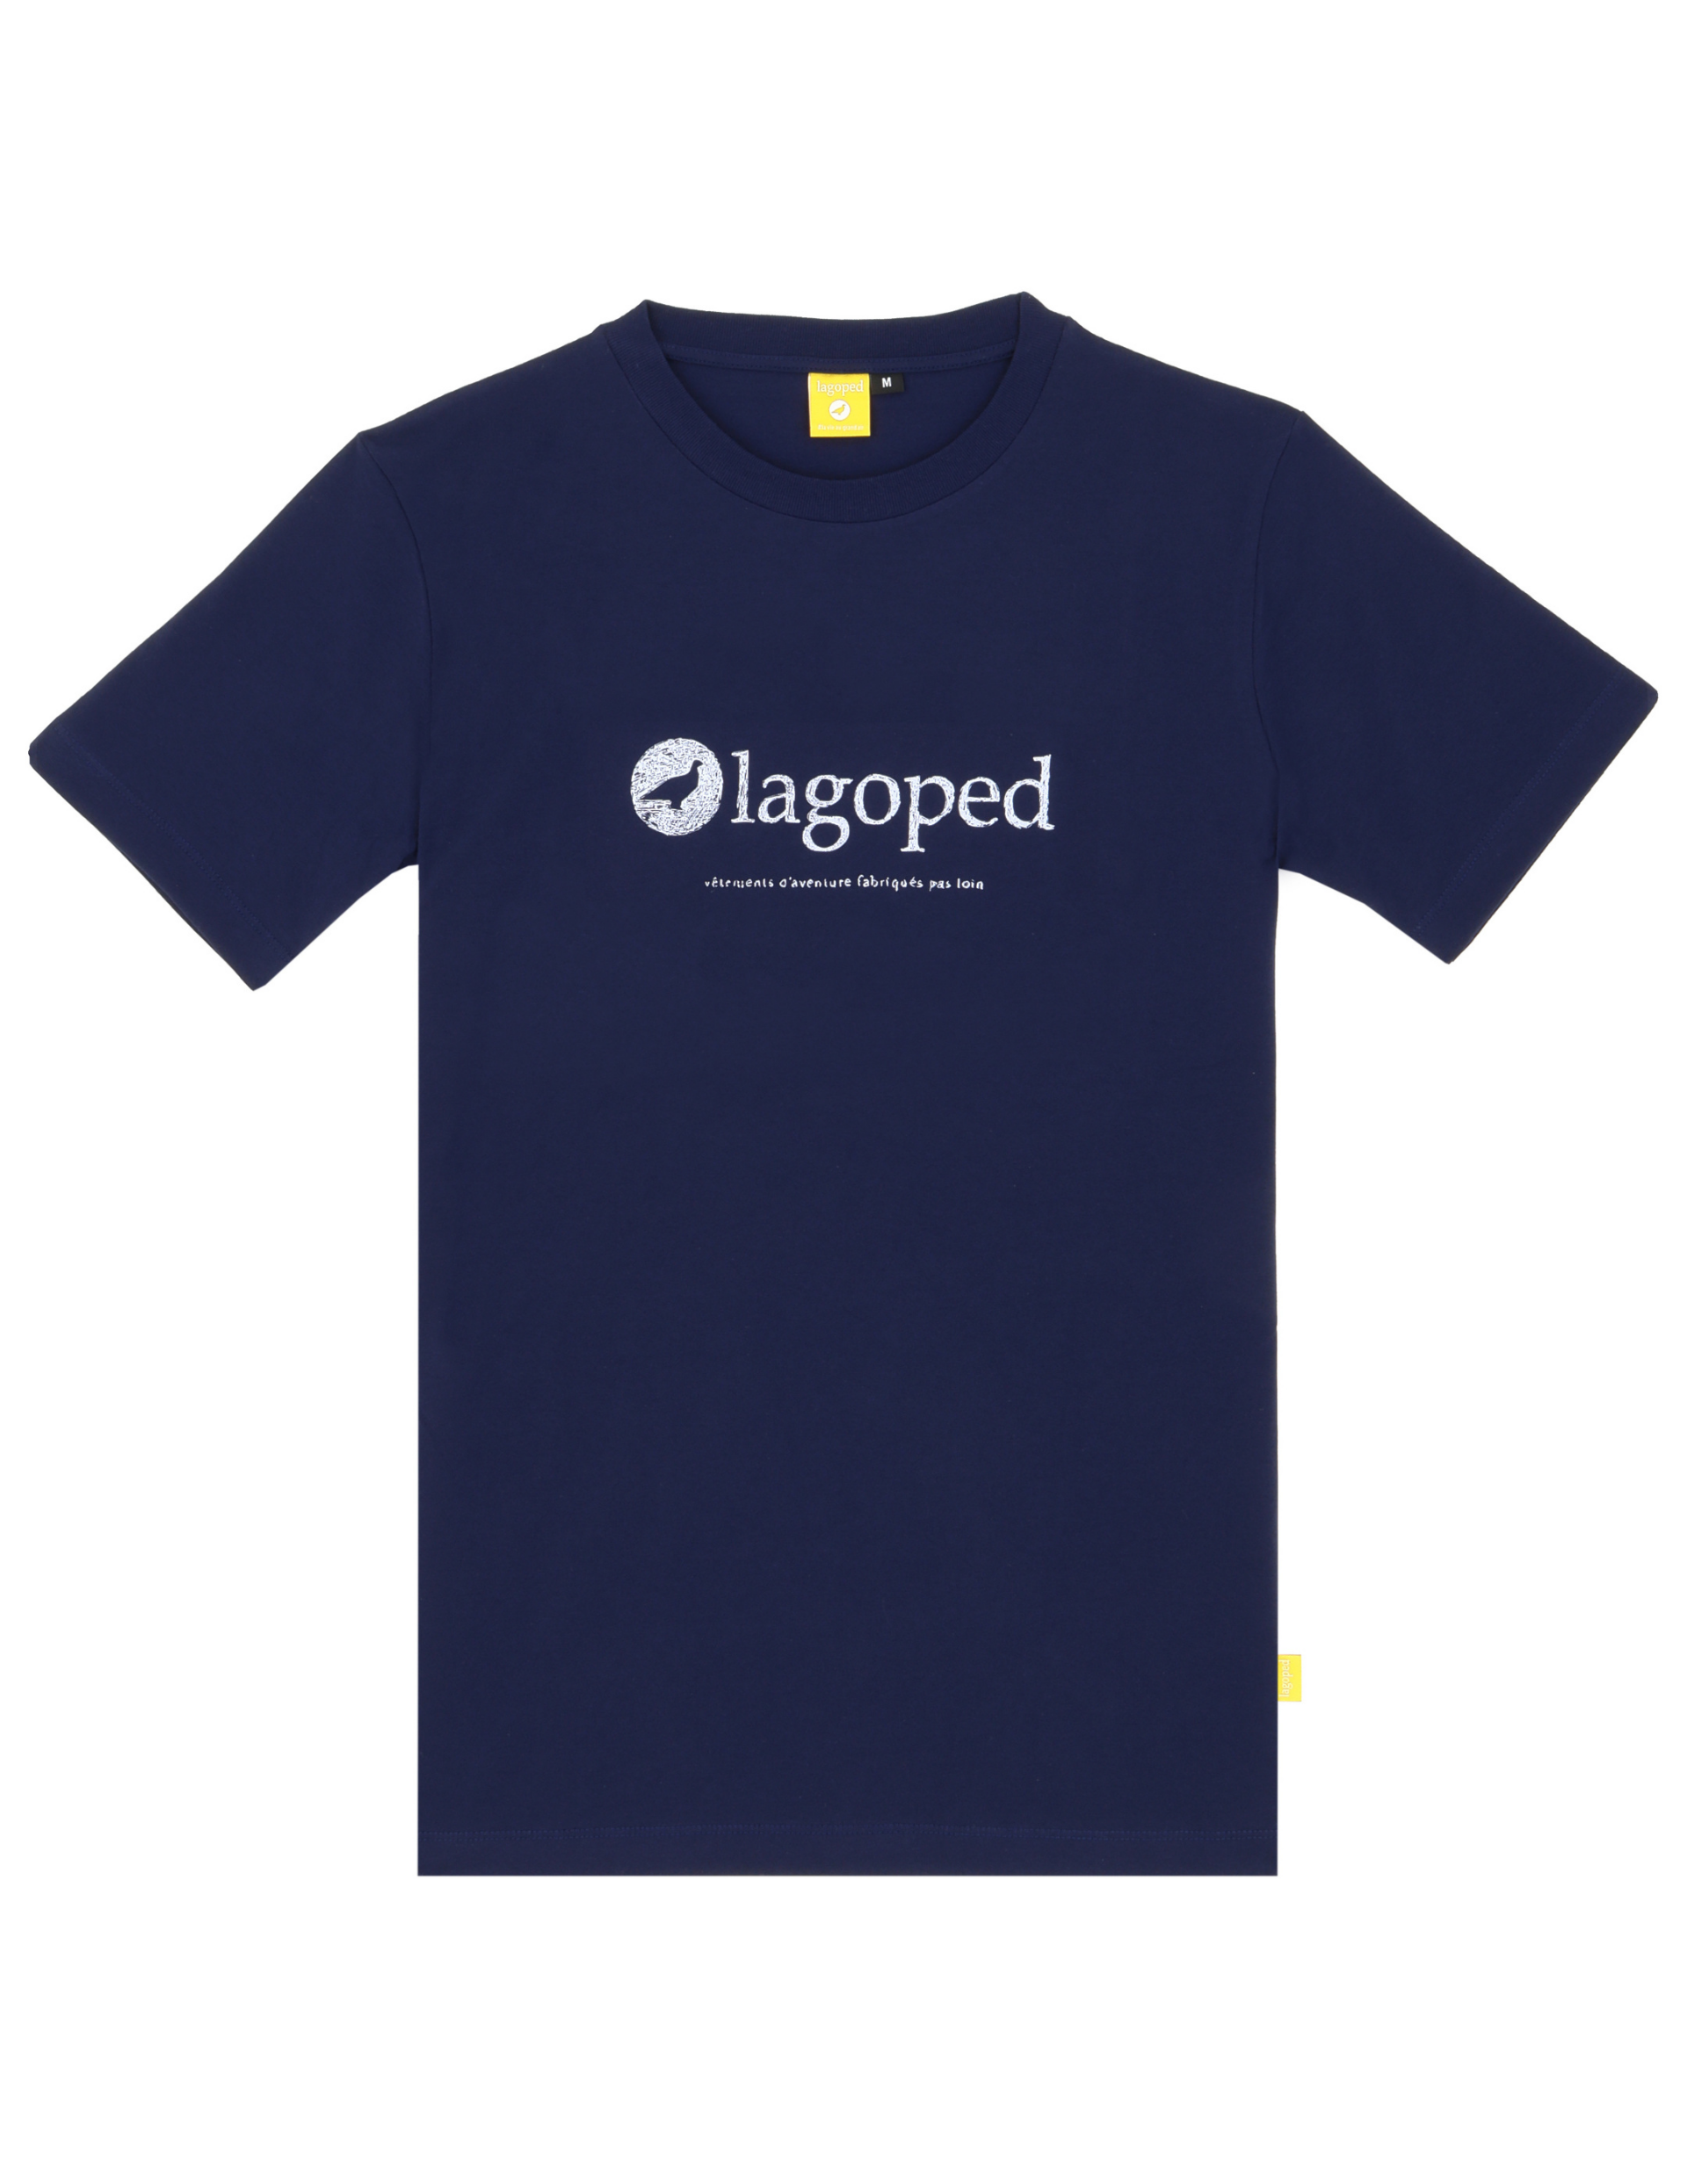 T-Shirt de Rando pour homme Lagoped Teerec à manches courtes Bleu